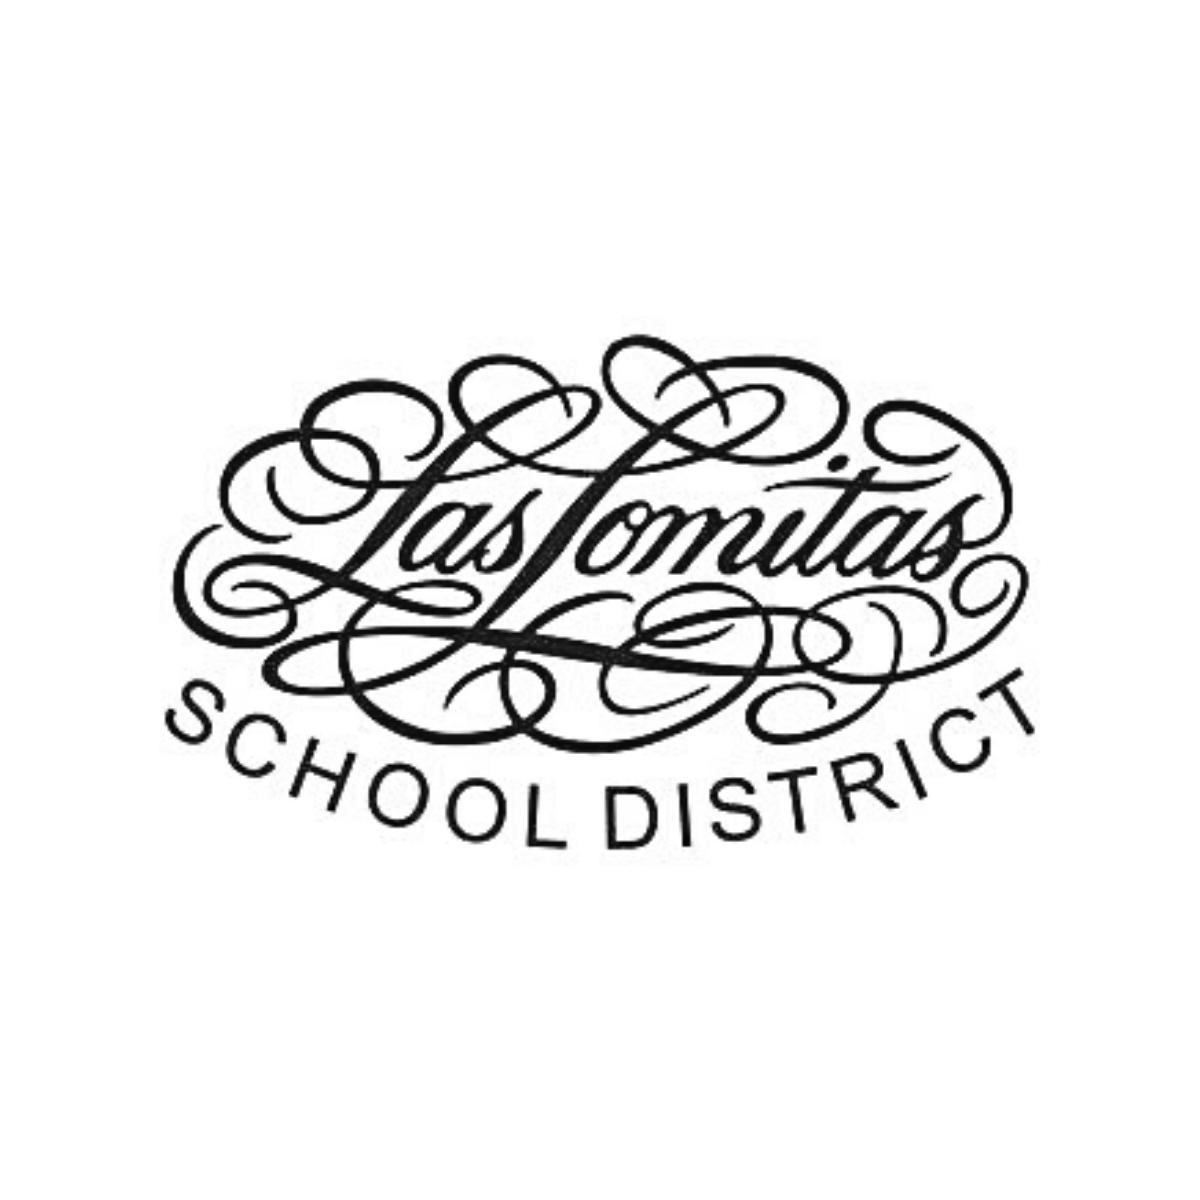 Las Lomitas School District logo